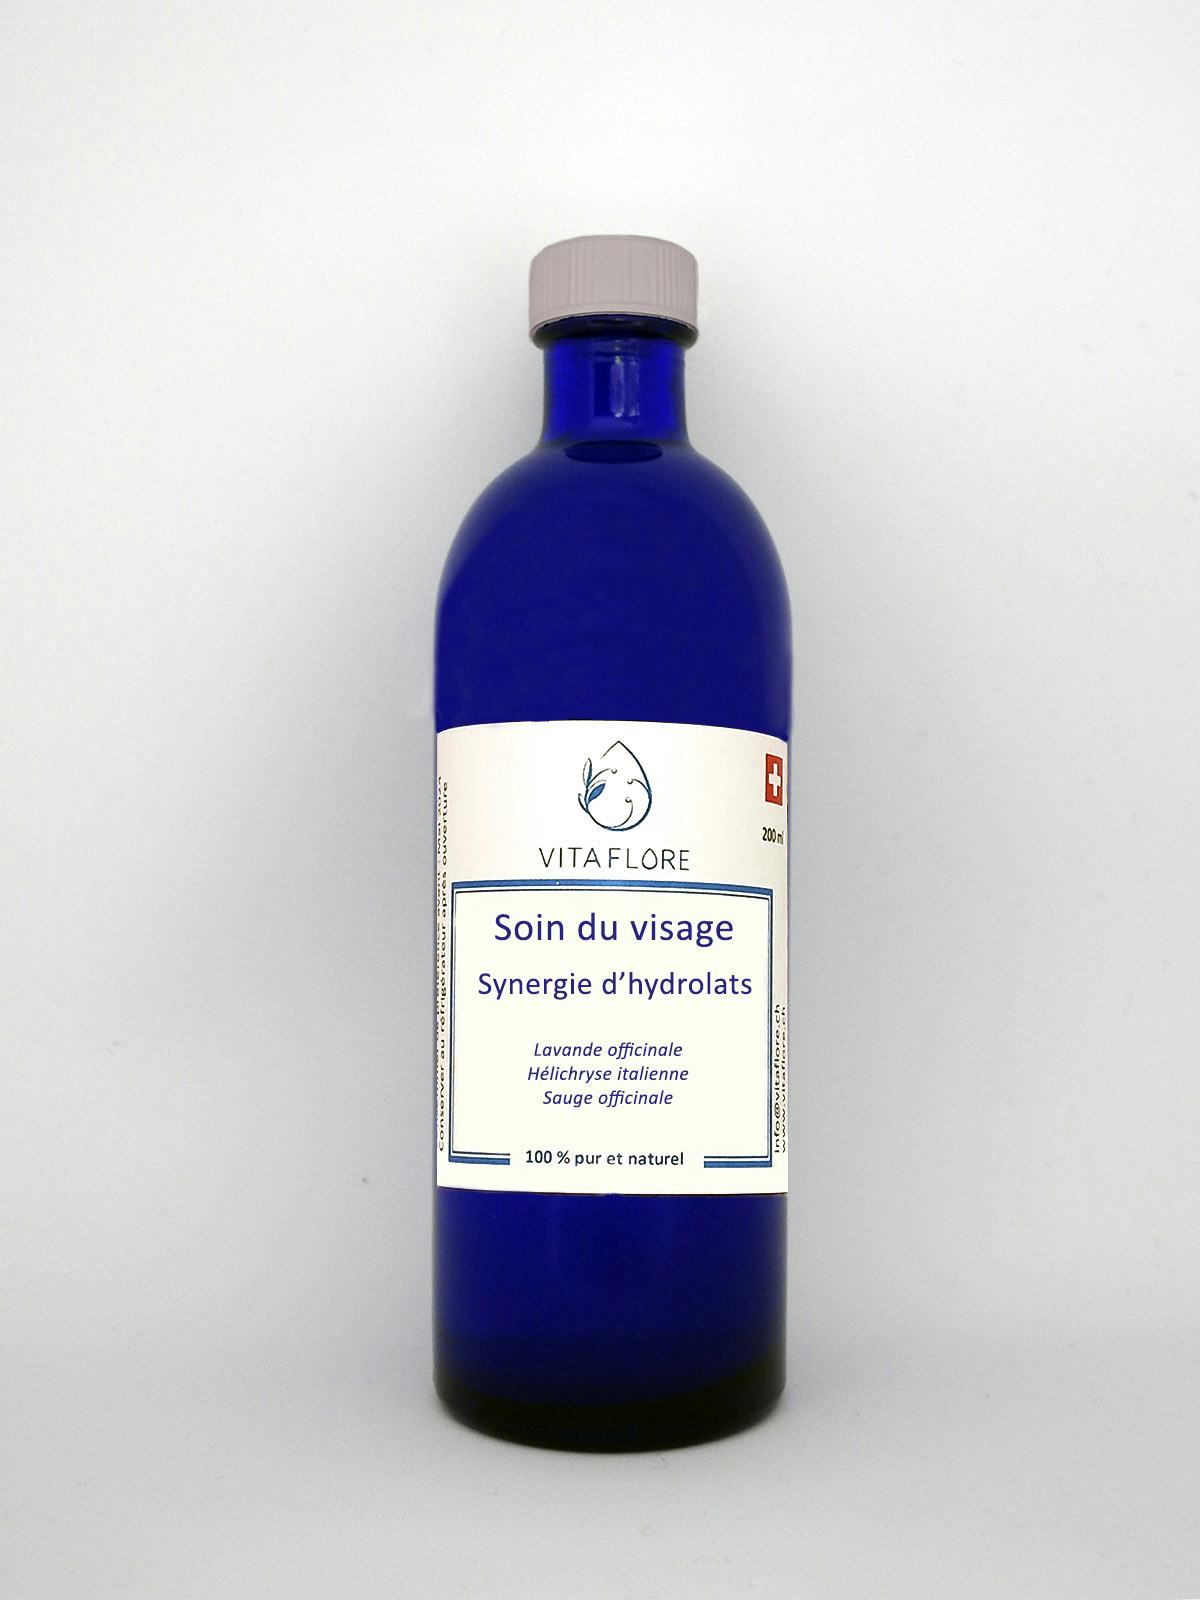 Synergie d’hydrolats – Soin du visage, prodotto artigianale per la vendita diretta in Svizzera